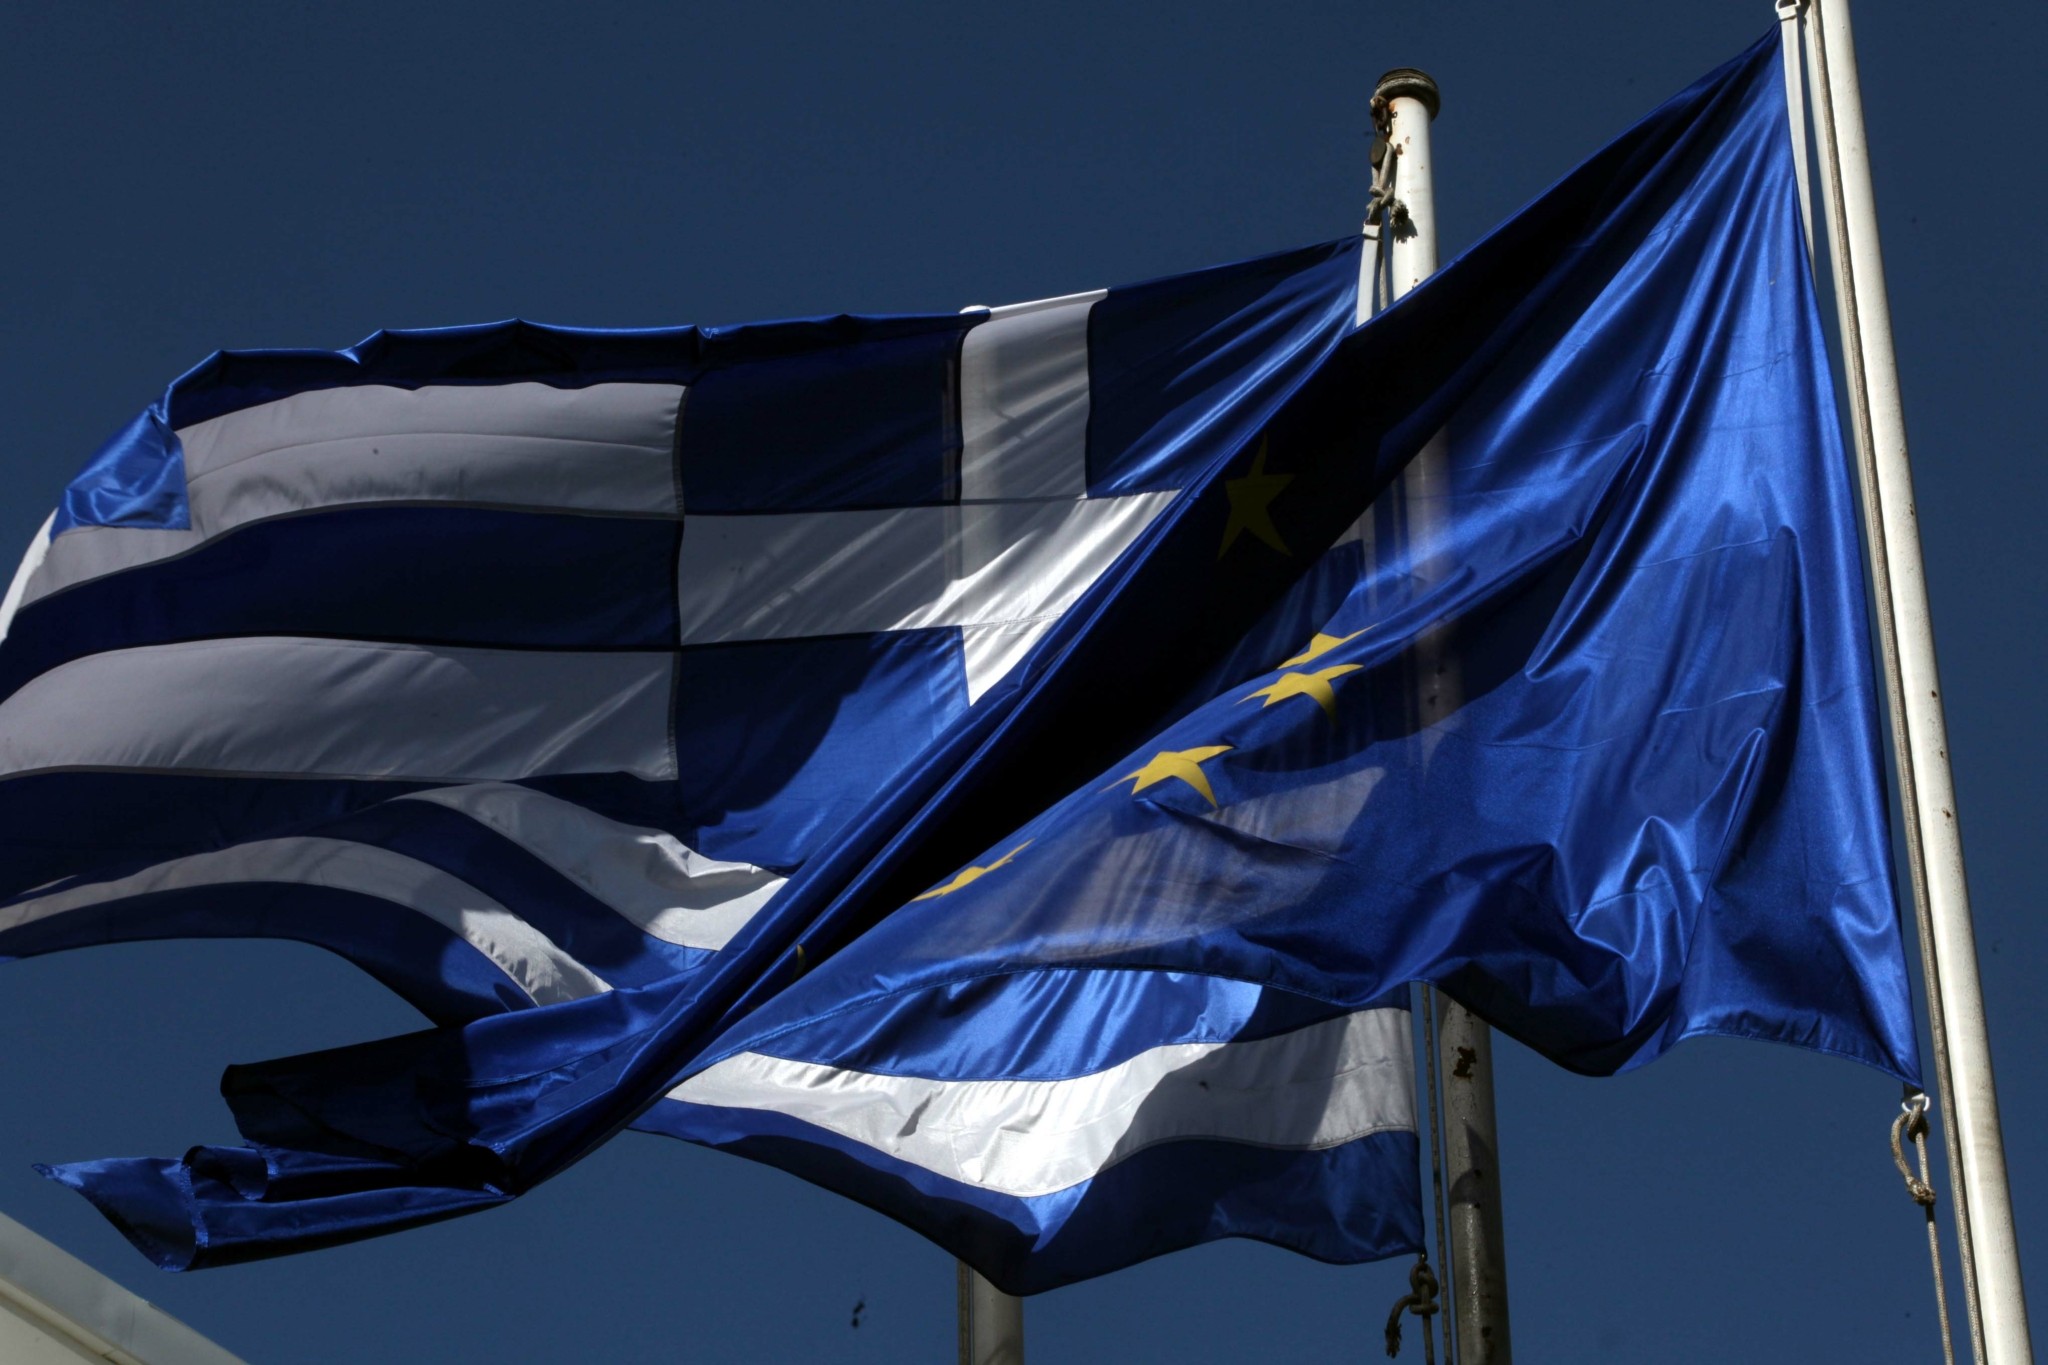 Ελληνική οικονομία